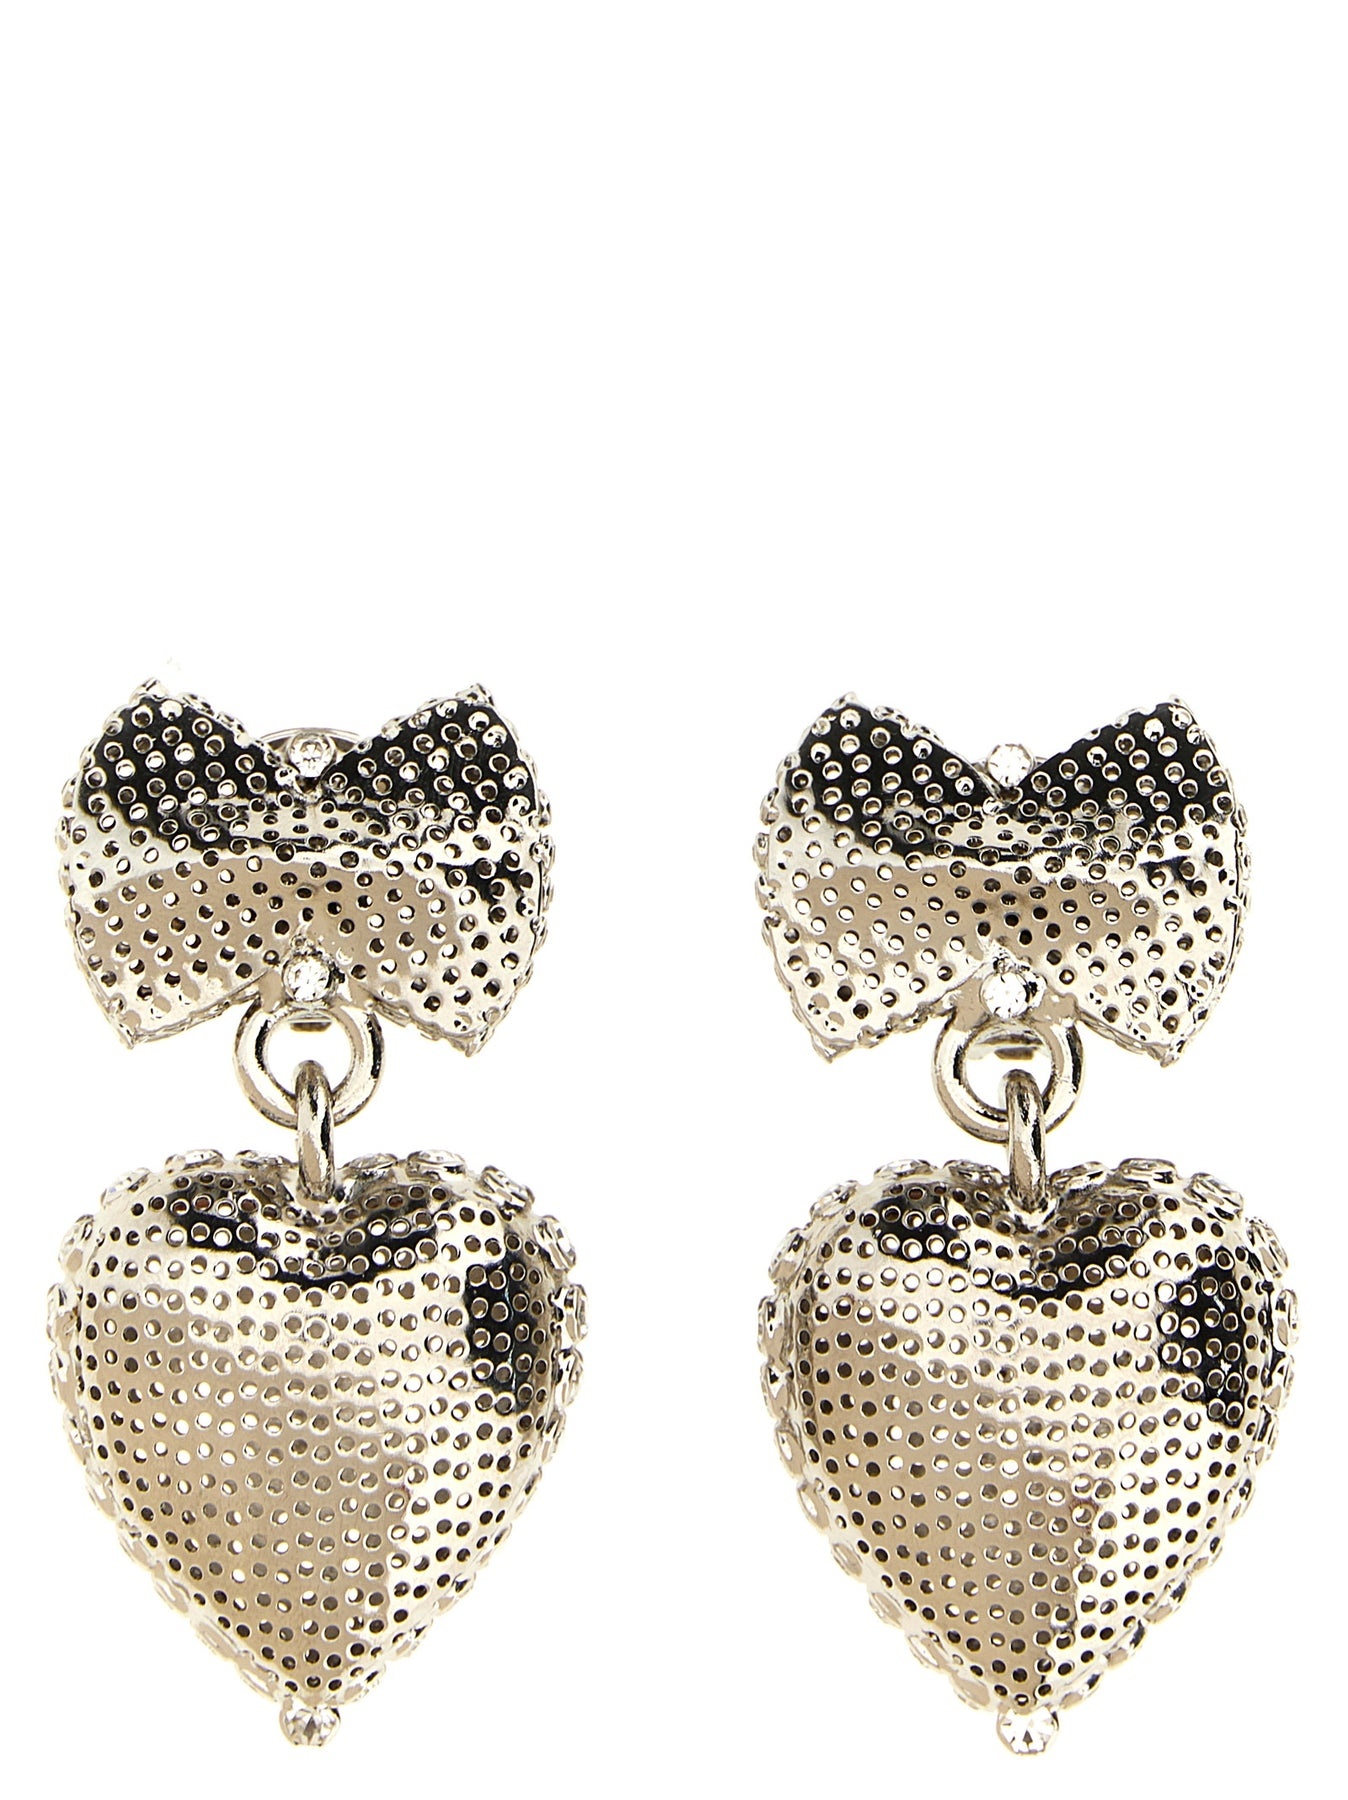 Metal Heart Jewelry Silver - 1